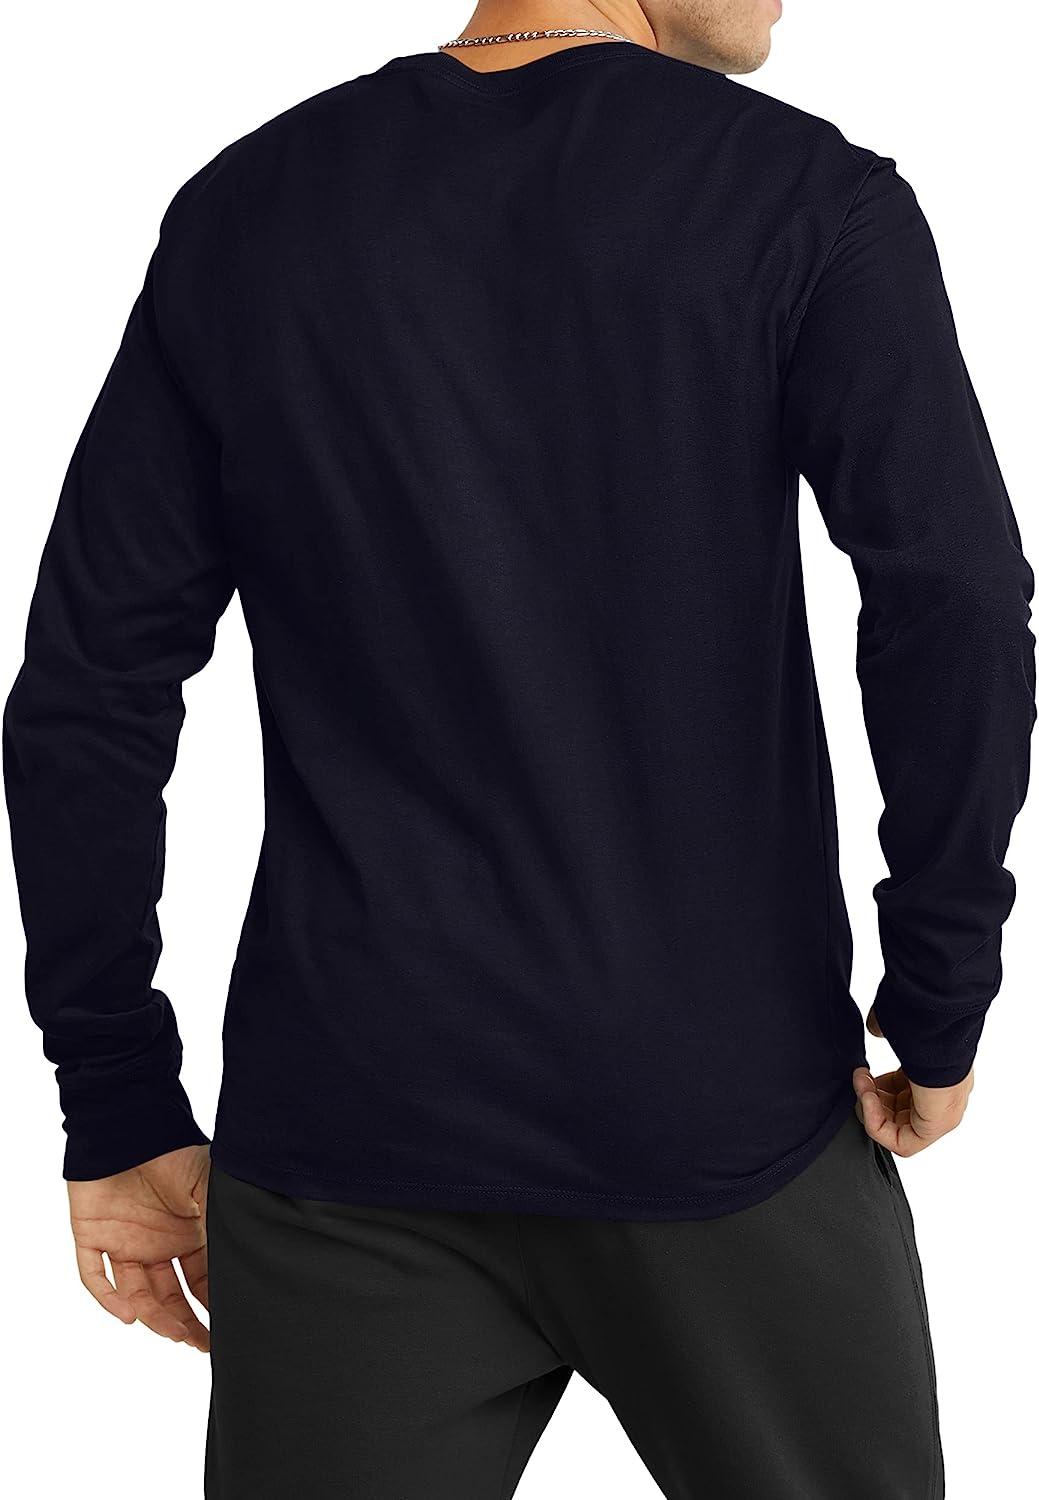 Champion Men\'s Long Sleeve Black Long Shirt, Shirts T Men Crewneck T Shirt, Long Sleeve Sleeve Large for